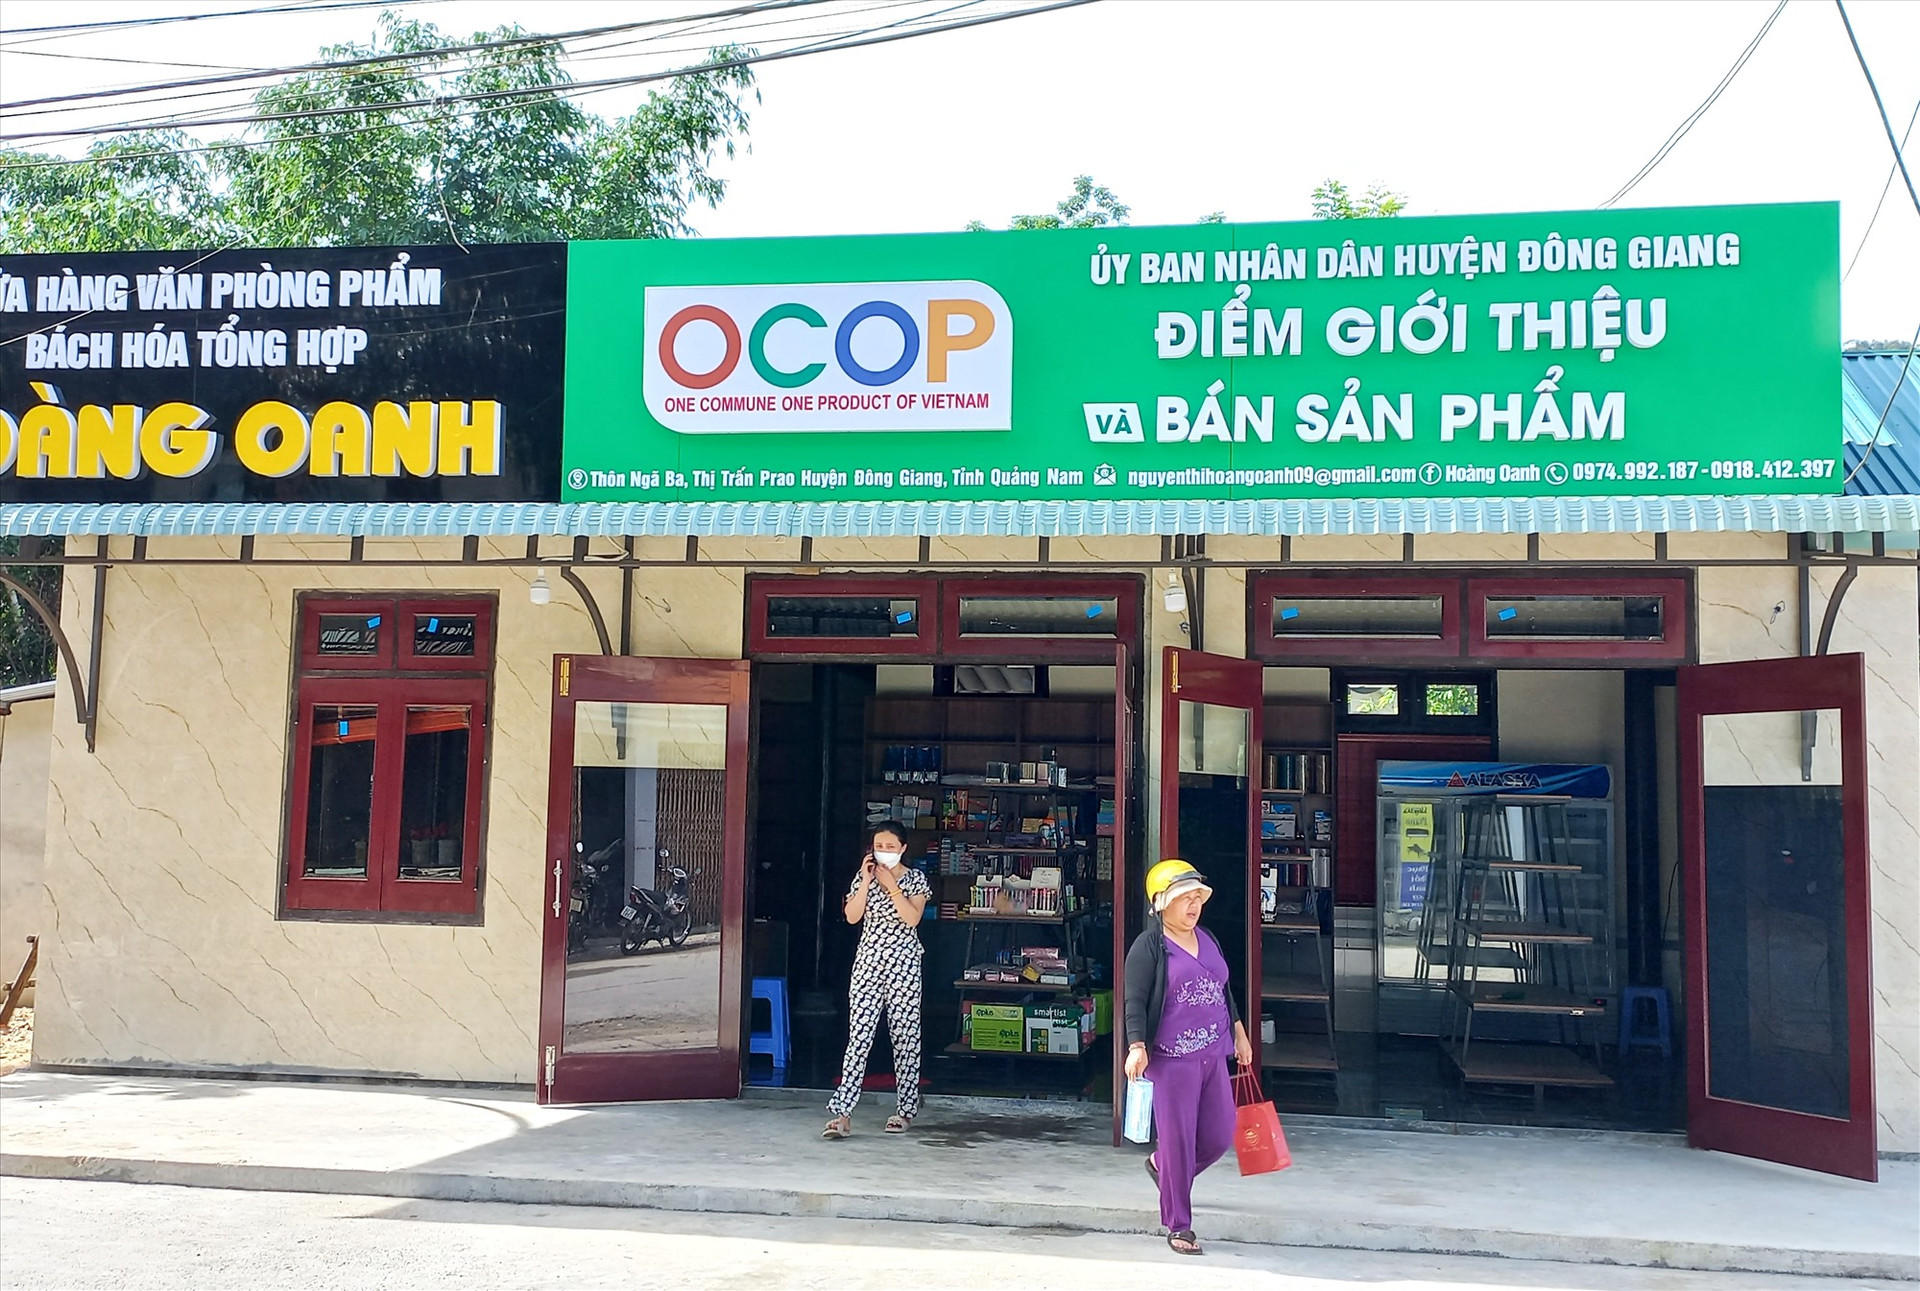 Điểm giới thiệu, bán sản phẩm OCOP huyện Đông Giang do cơ sở Hoàng Oanh thiết lập. Ảnh: K.K